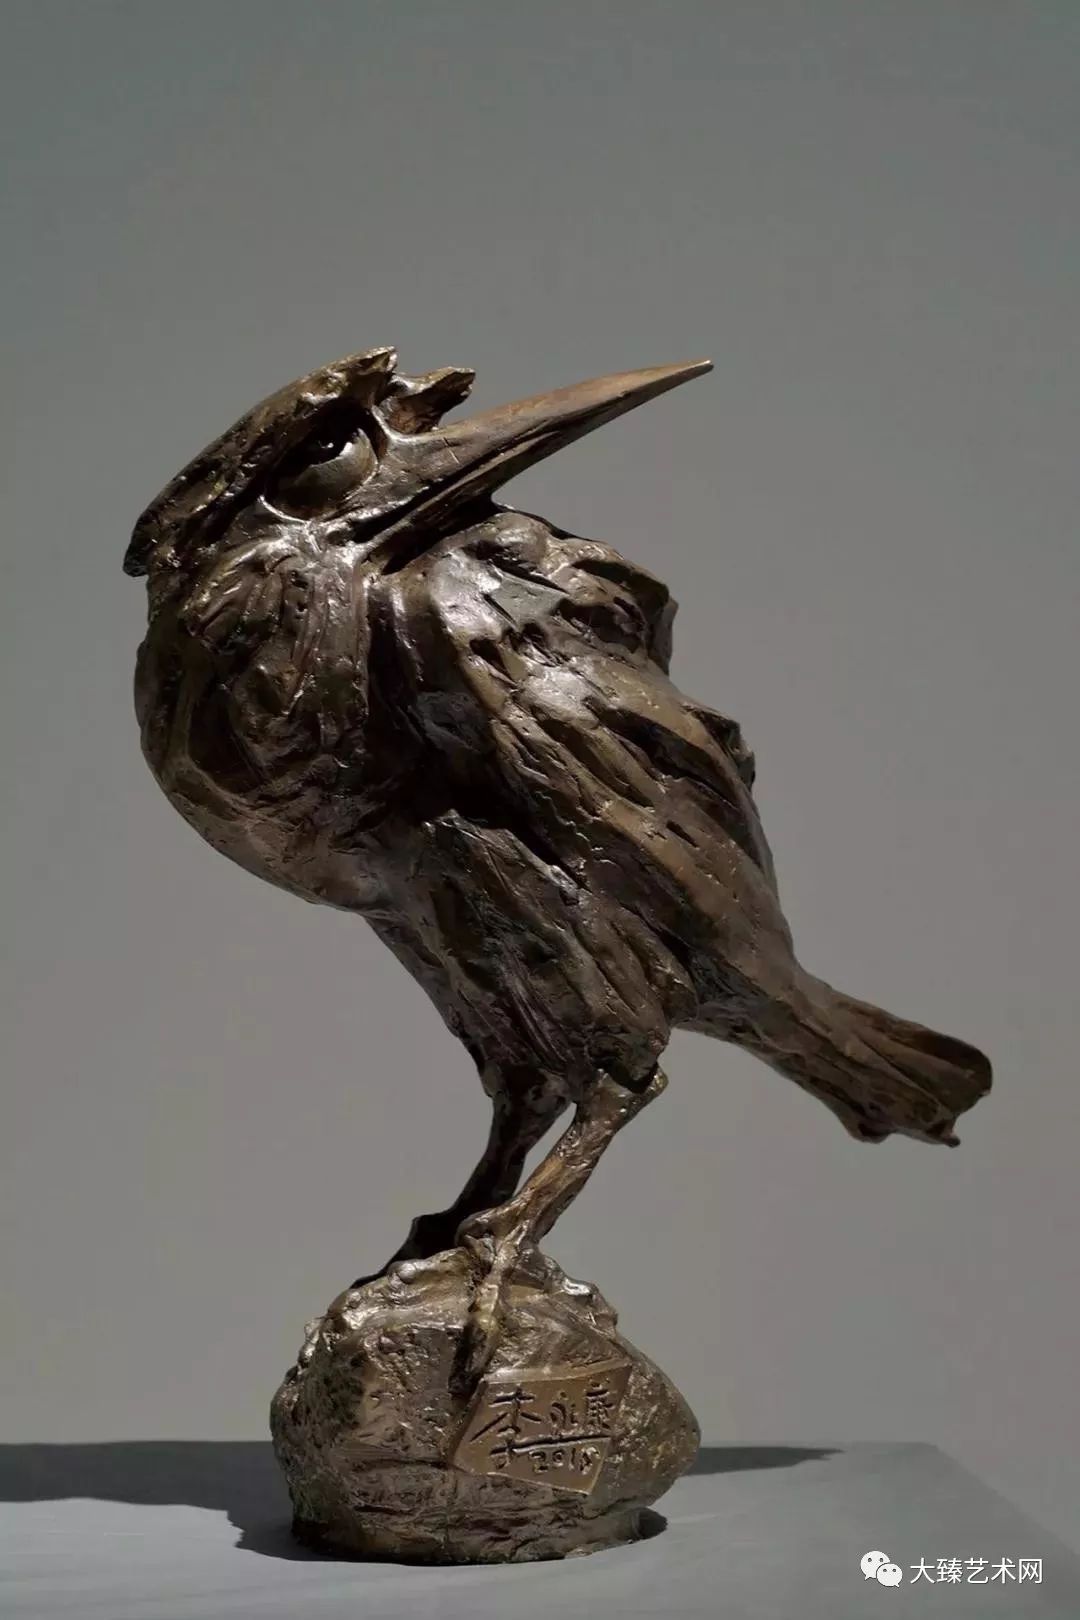 艺术家李永康他在国内雕塑界有学者型雕塑家美誉